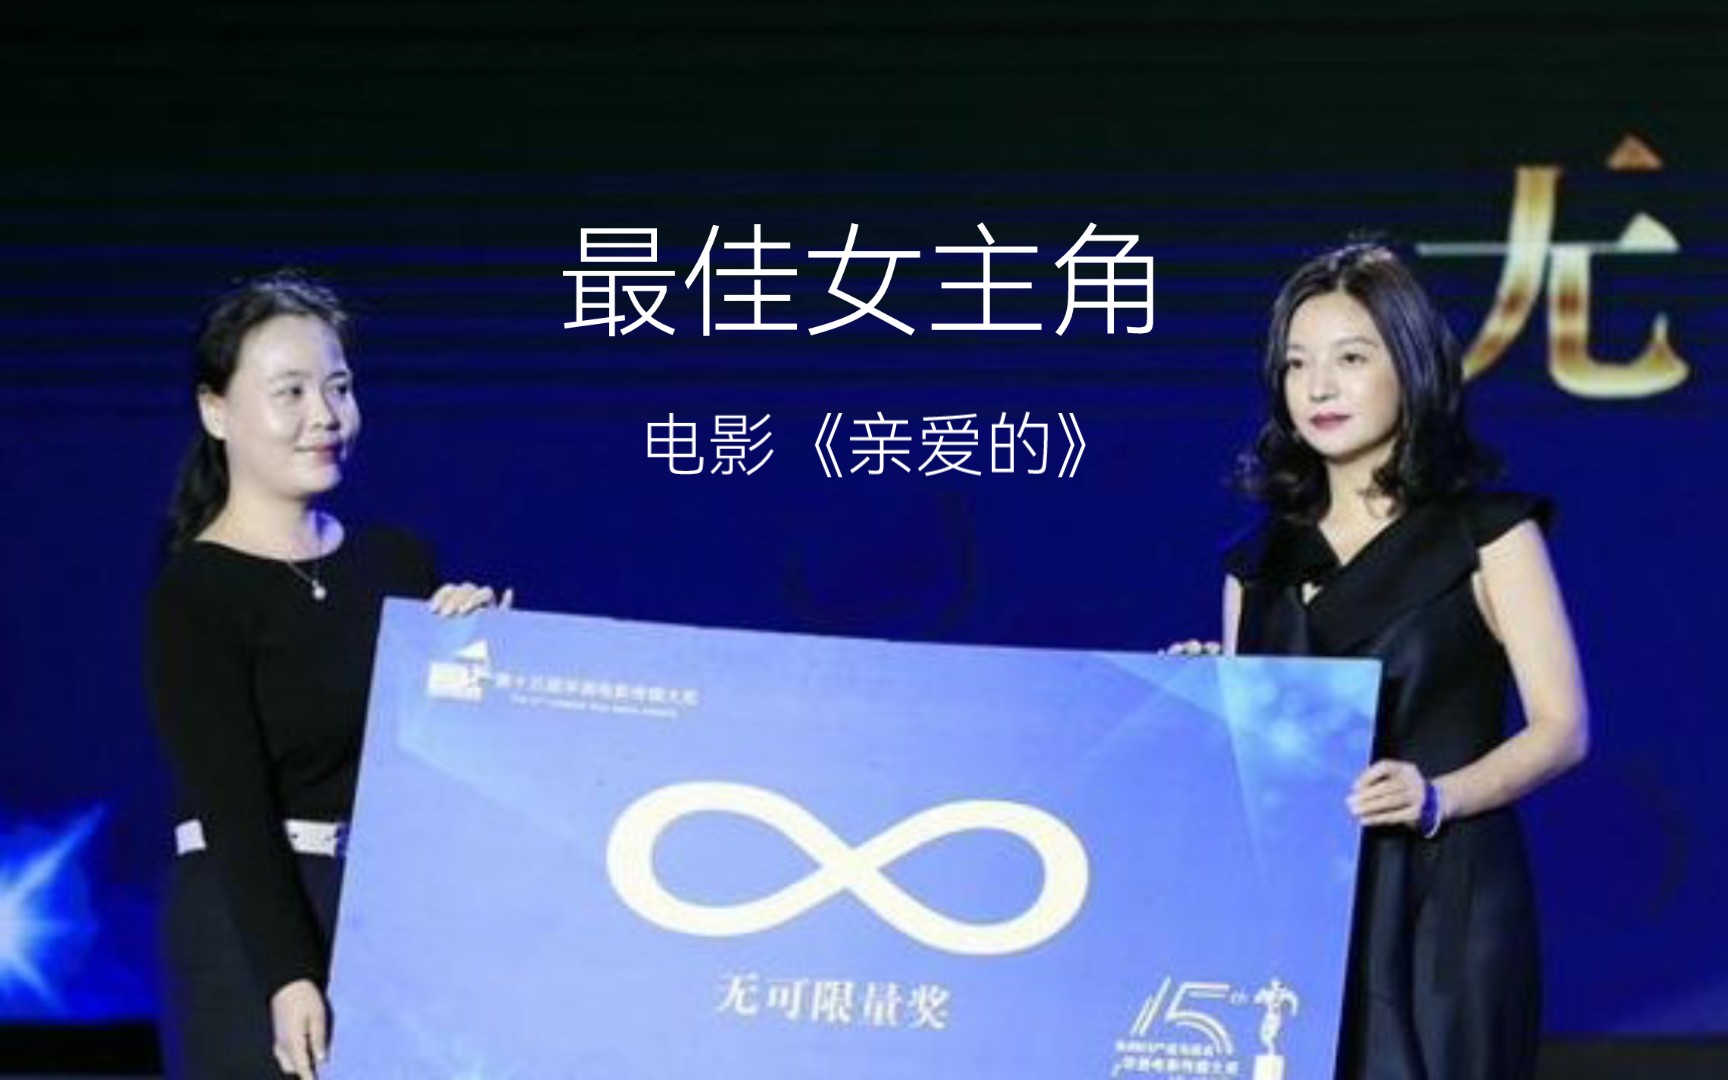 2015年第15届华语电影传媒大奖:赵薇凭借电影《亲爱的》获最佳女主角